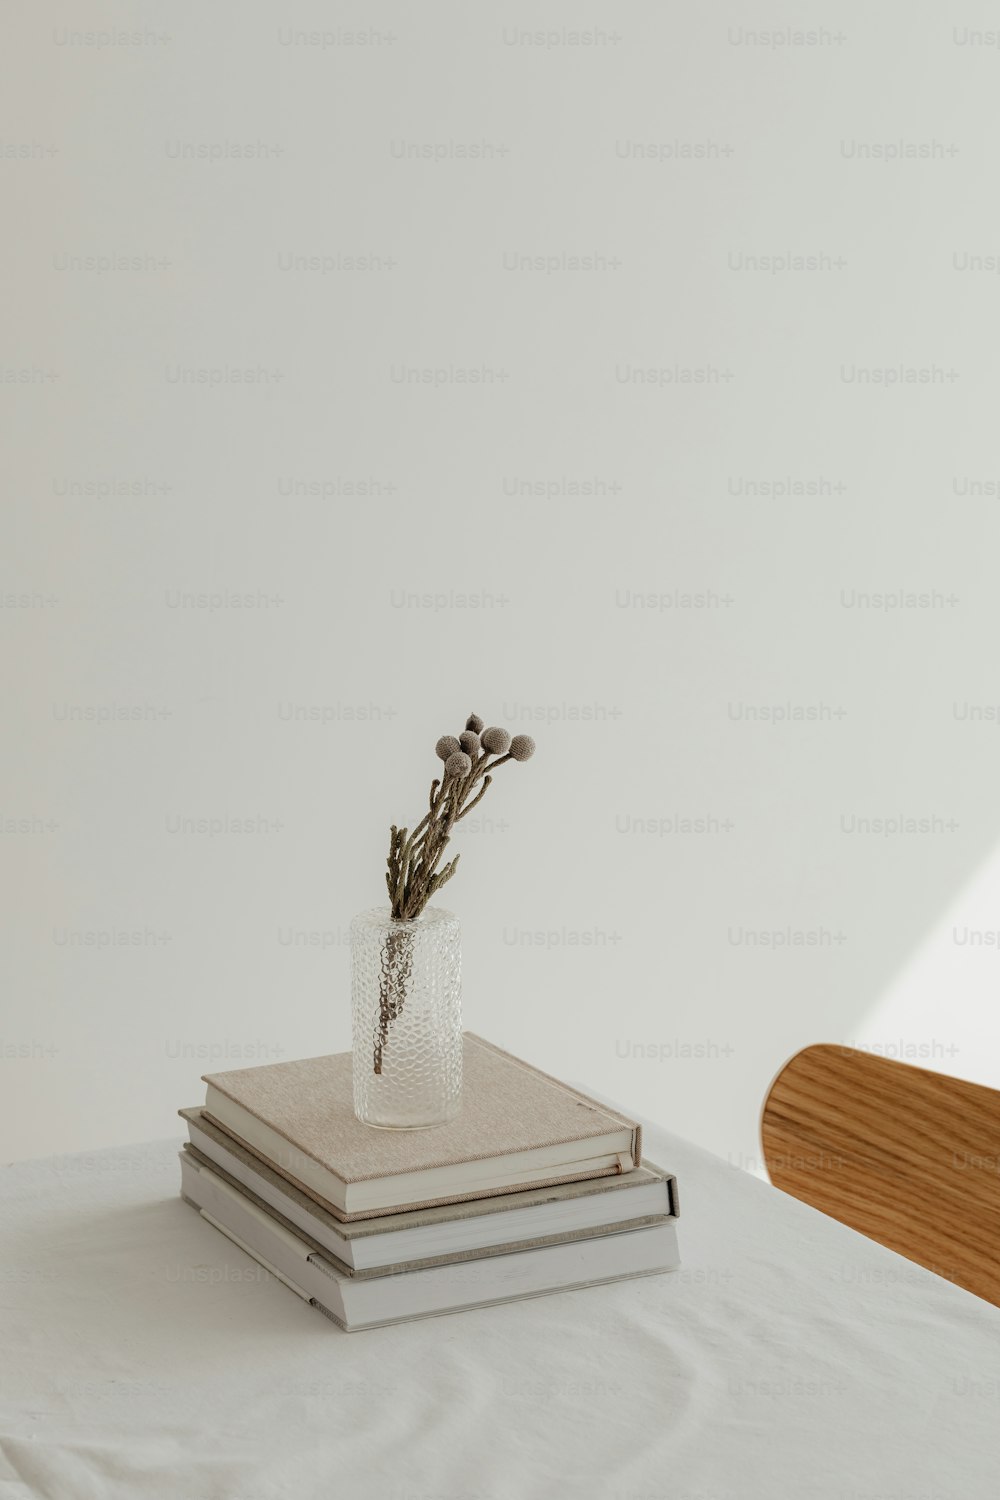 하얀 탁자 위에 놓여 있는 책 더미